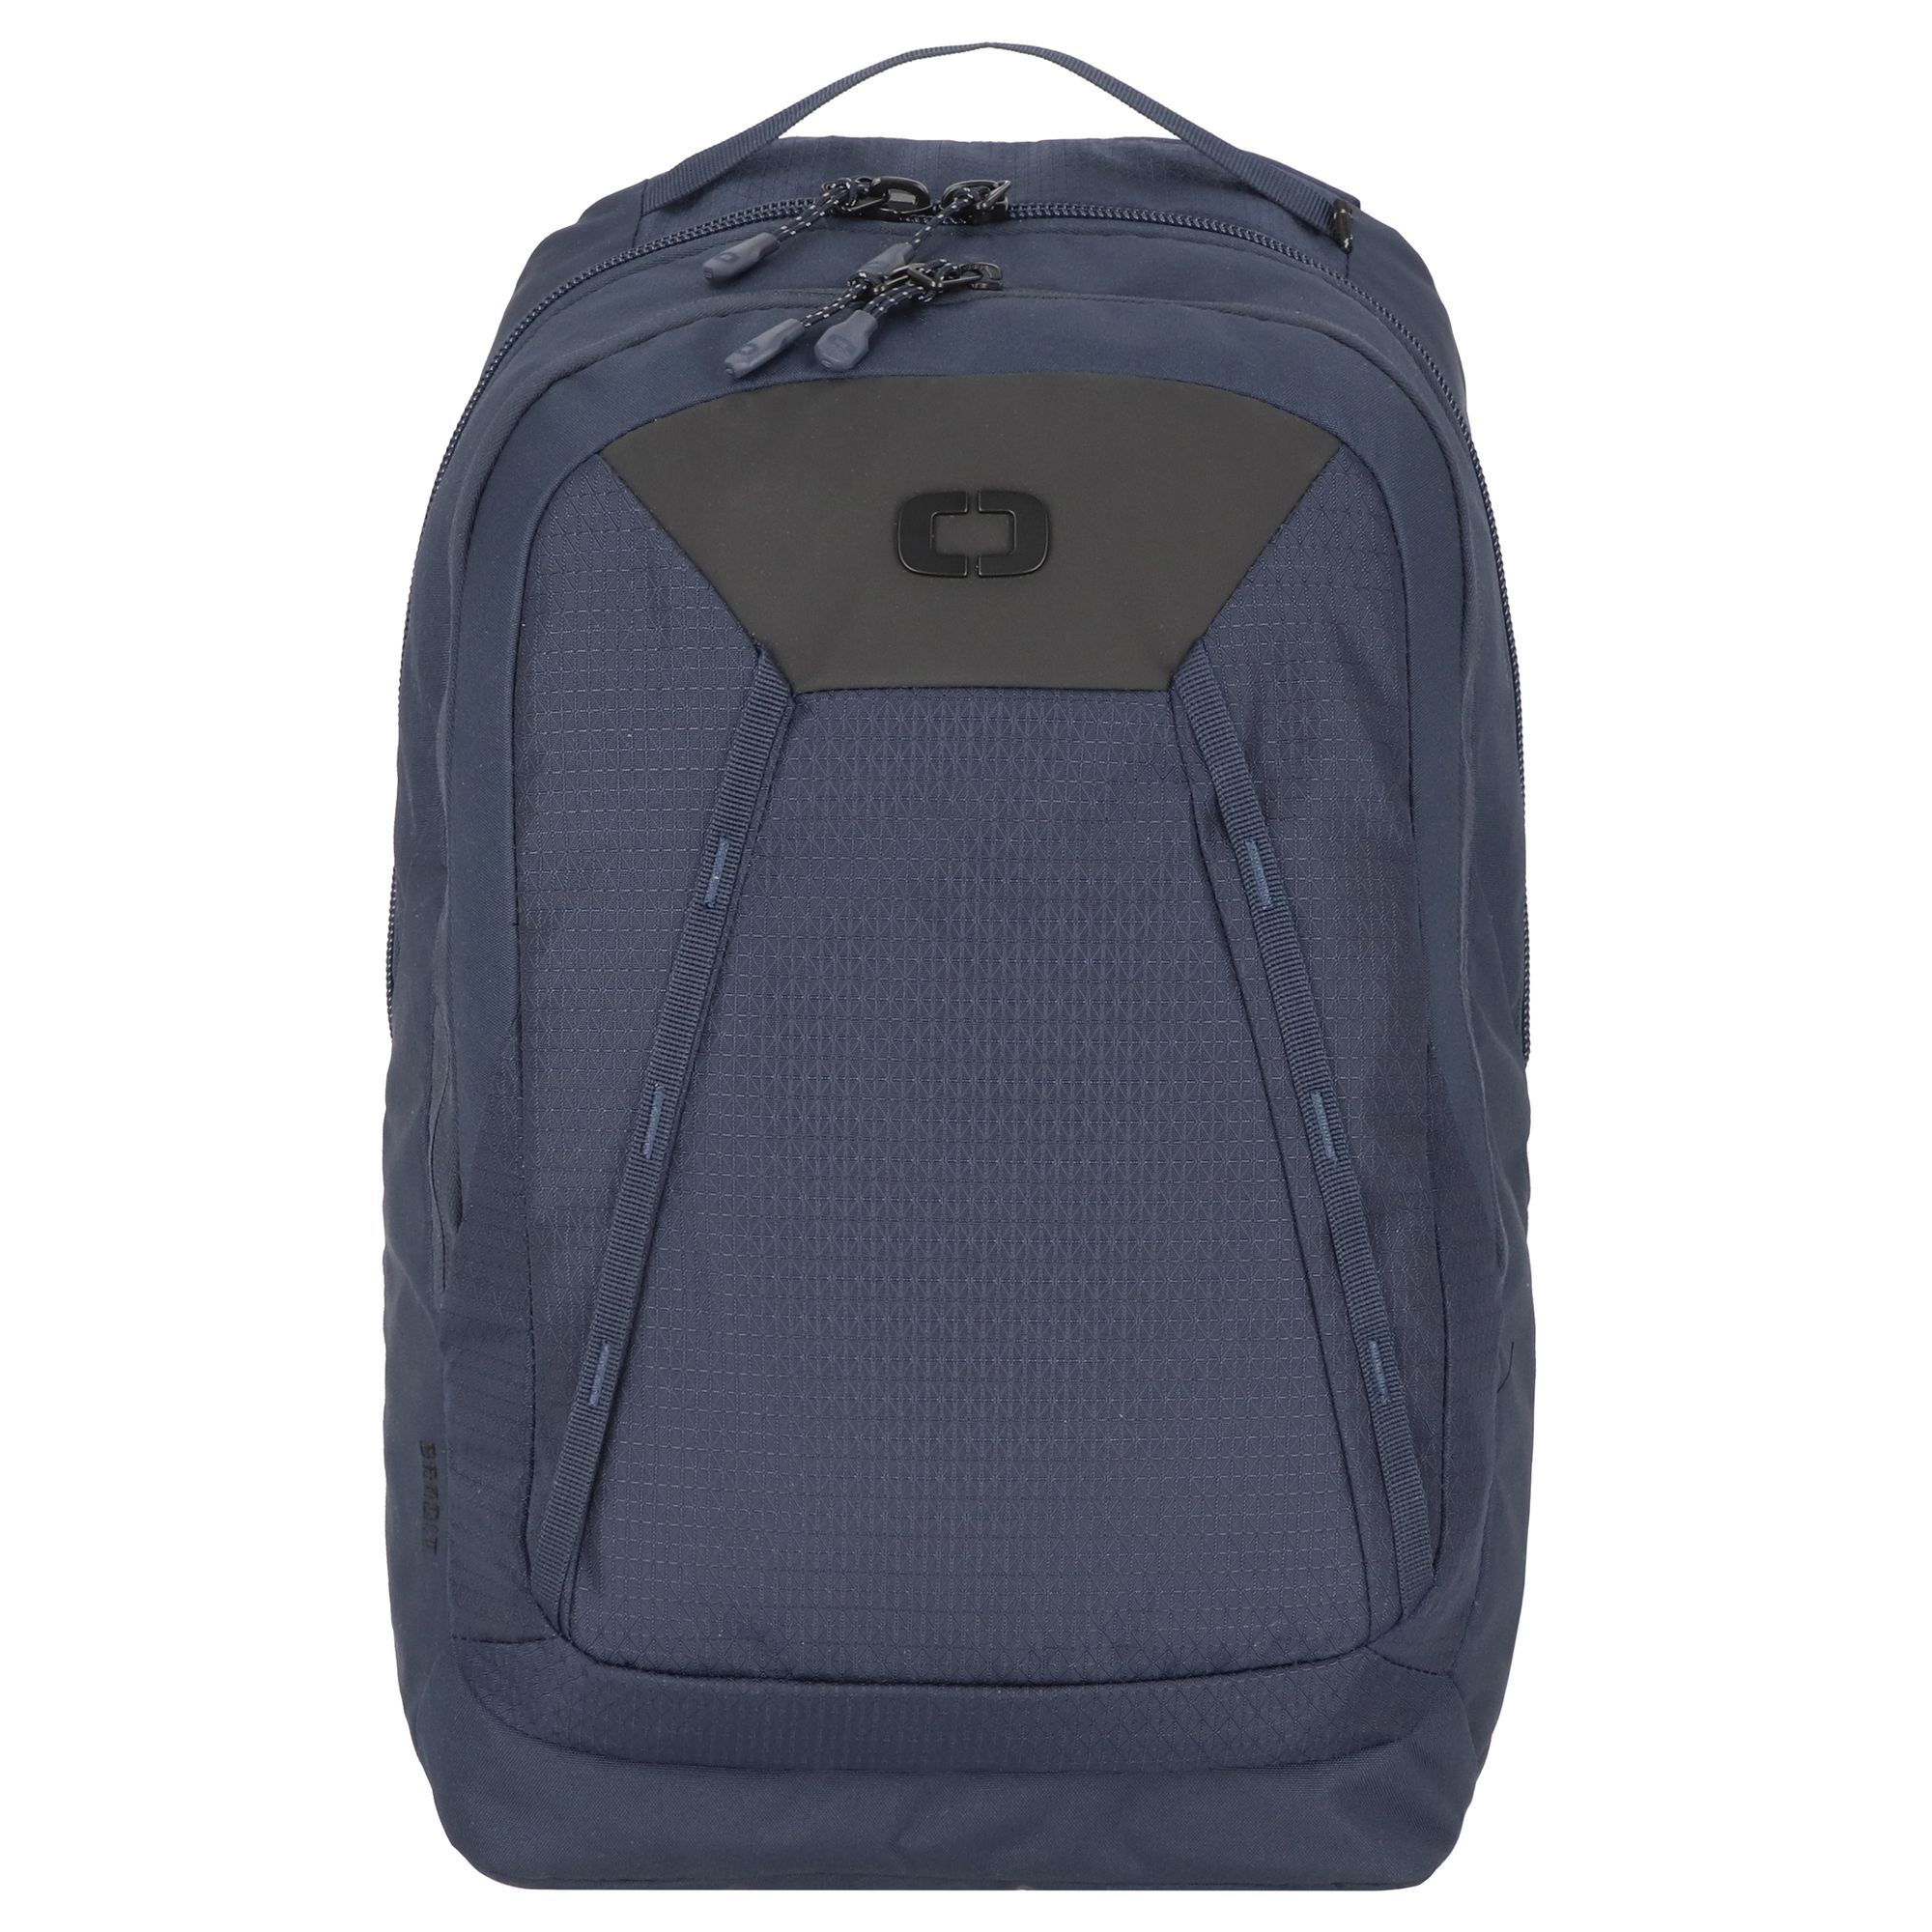 Рюкзак Ogio Bandit Pro 51 cm Laptopfach, темно синий рюкзак ogio bandit pro 51 cm laptopfach темно синий